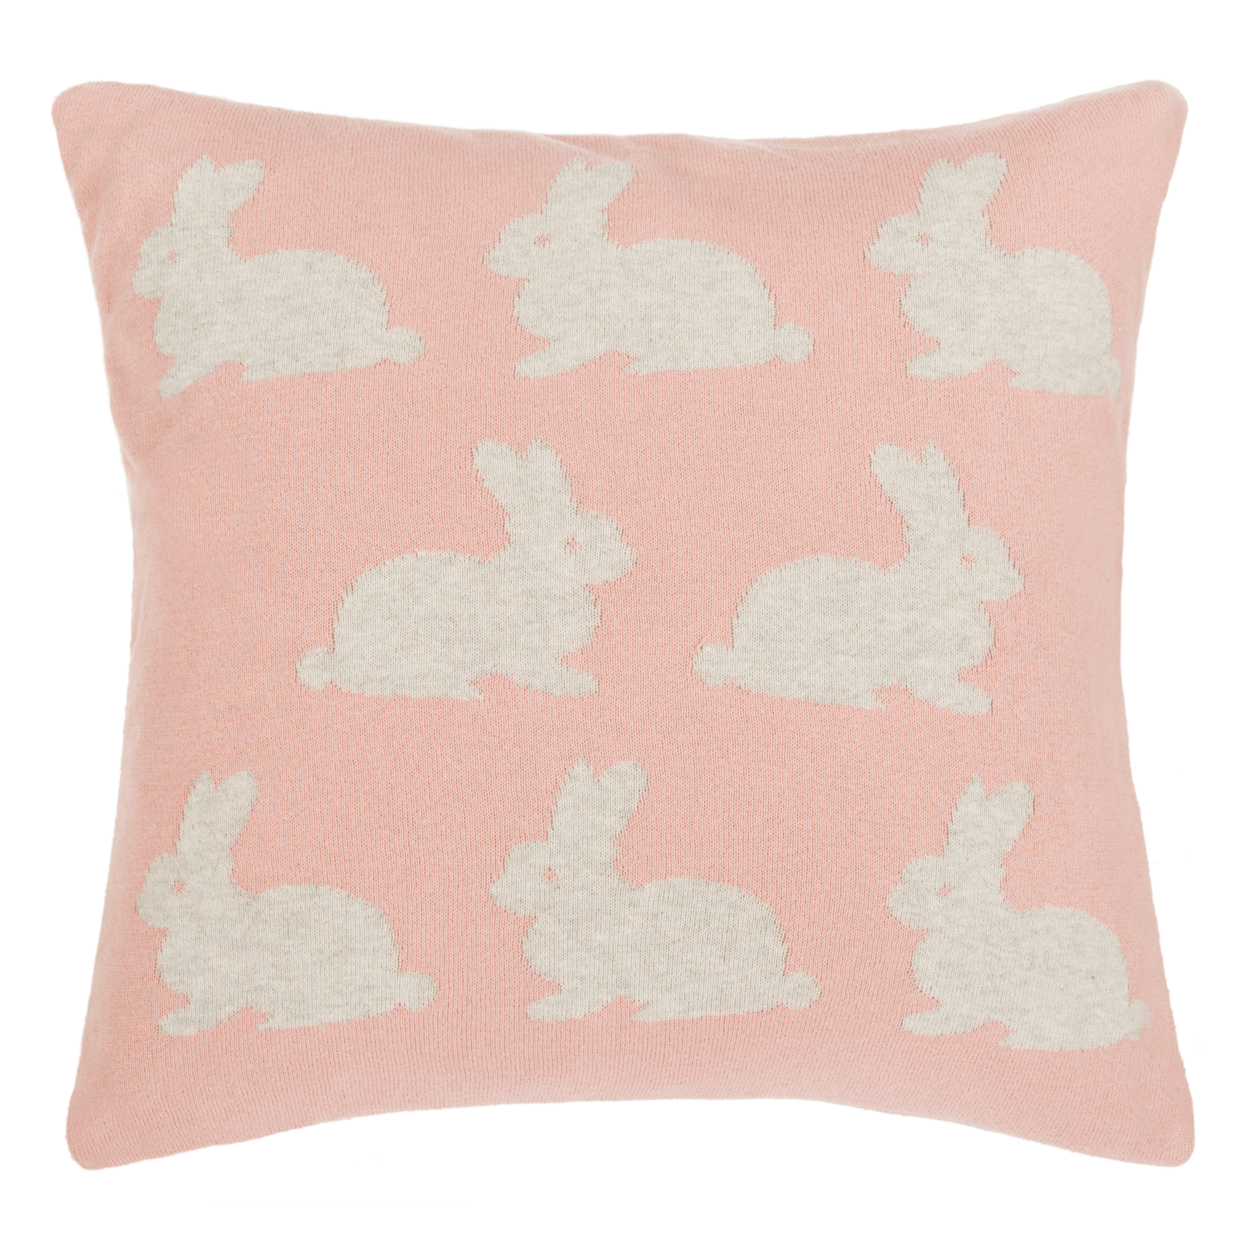 SAFAVIEH Bunny Hop Knit Pillow Pink / Grey